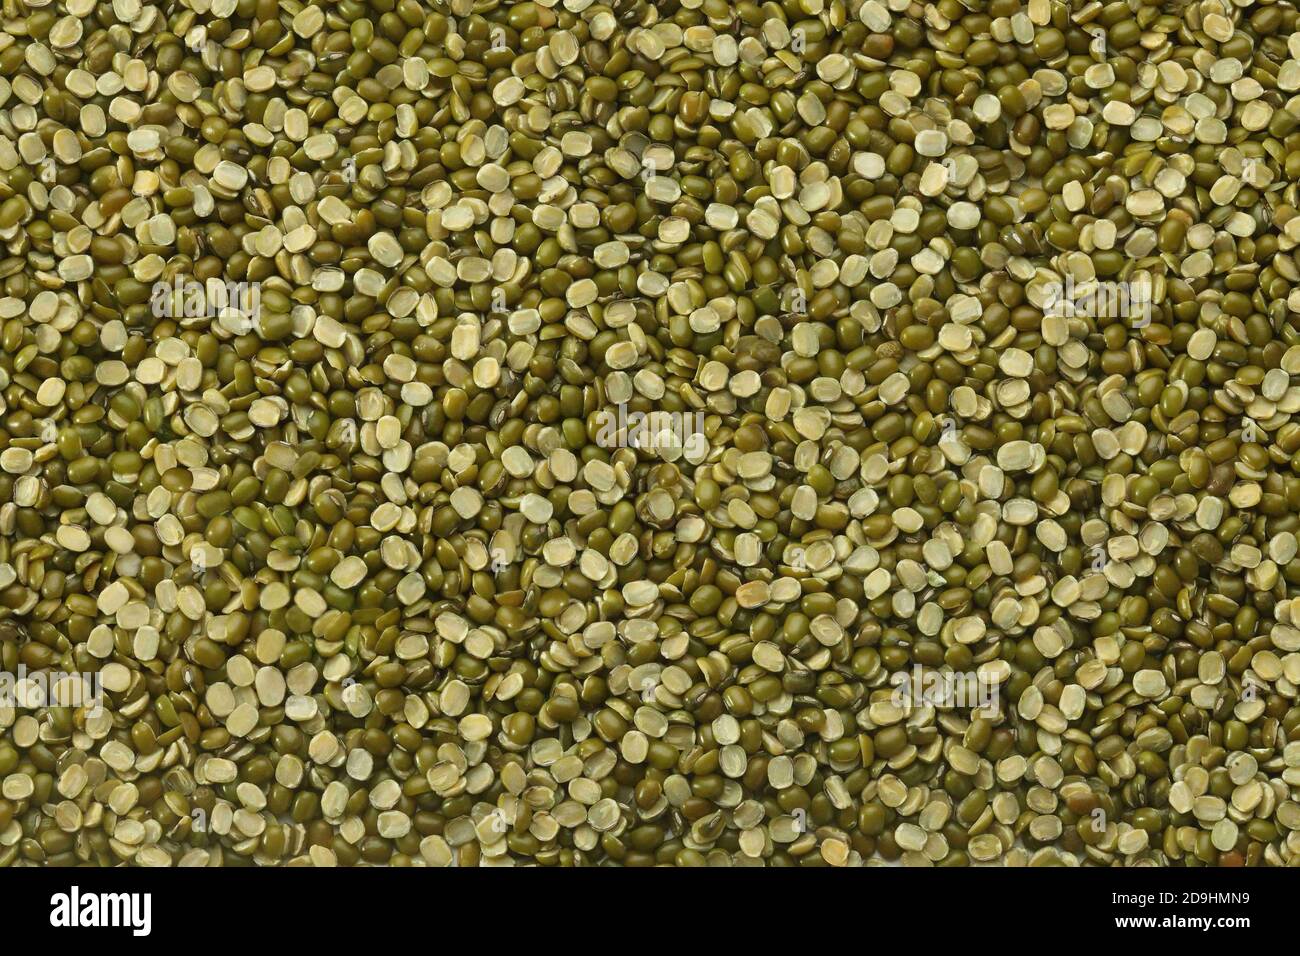 Split Mungbean Linsen auch bekannt als Mungbean, Green Moong Bean, Mung Gram, Vigna Radiata, Green Gram, Golden Gram Hülsenfrüchte, Moong Bean, Moong Dal Stockfoto